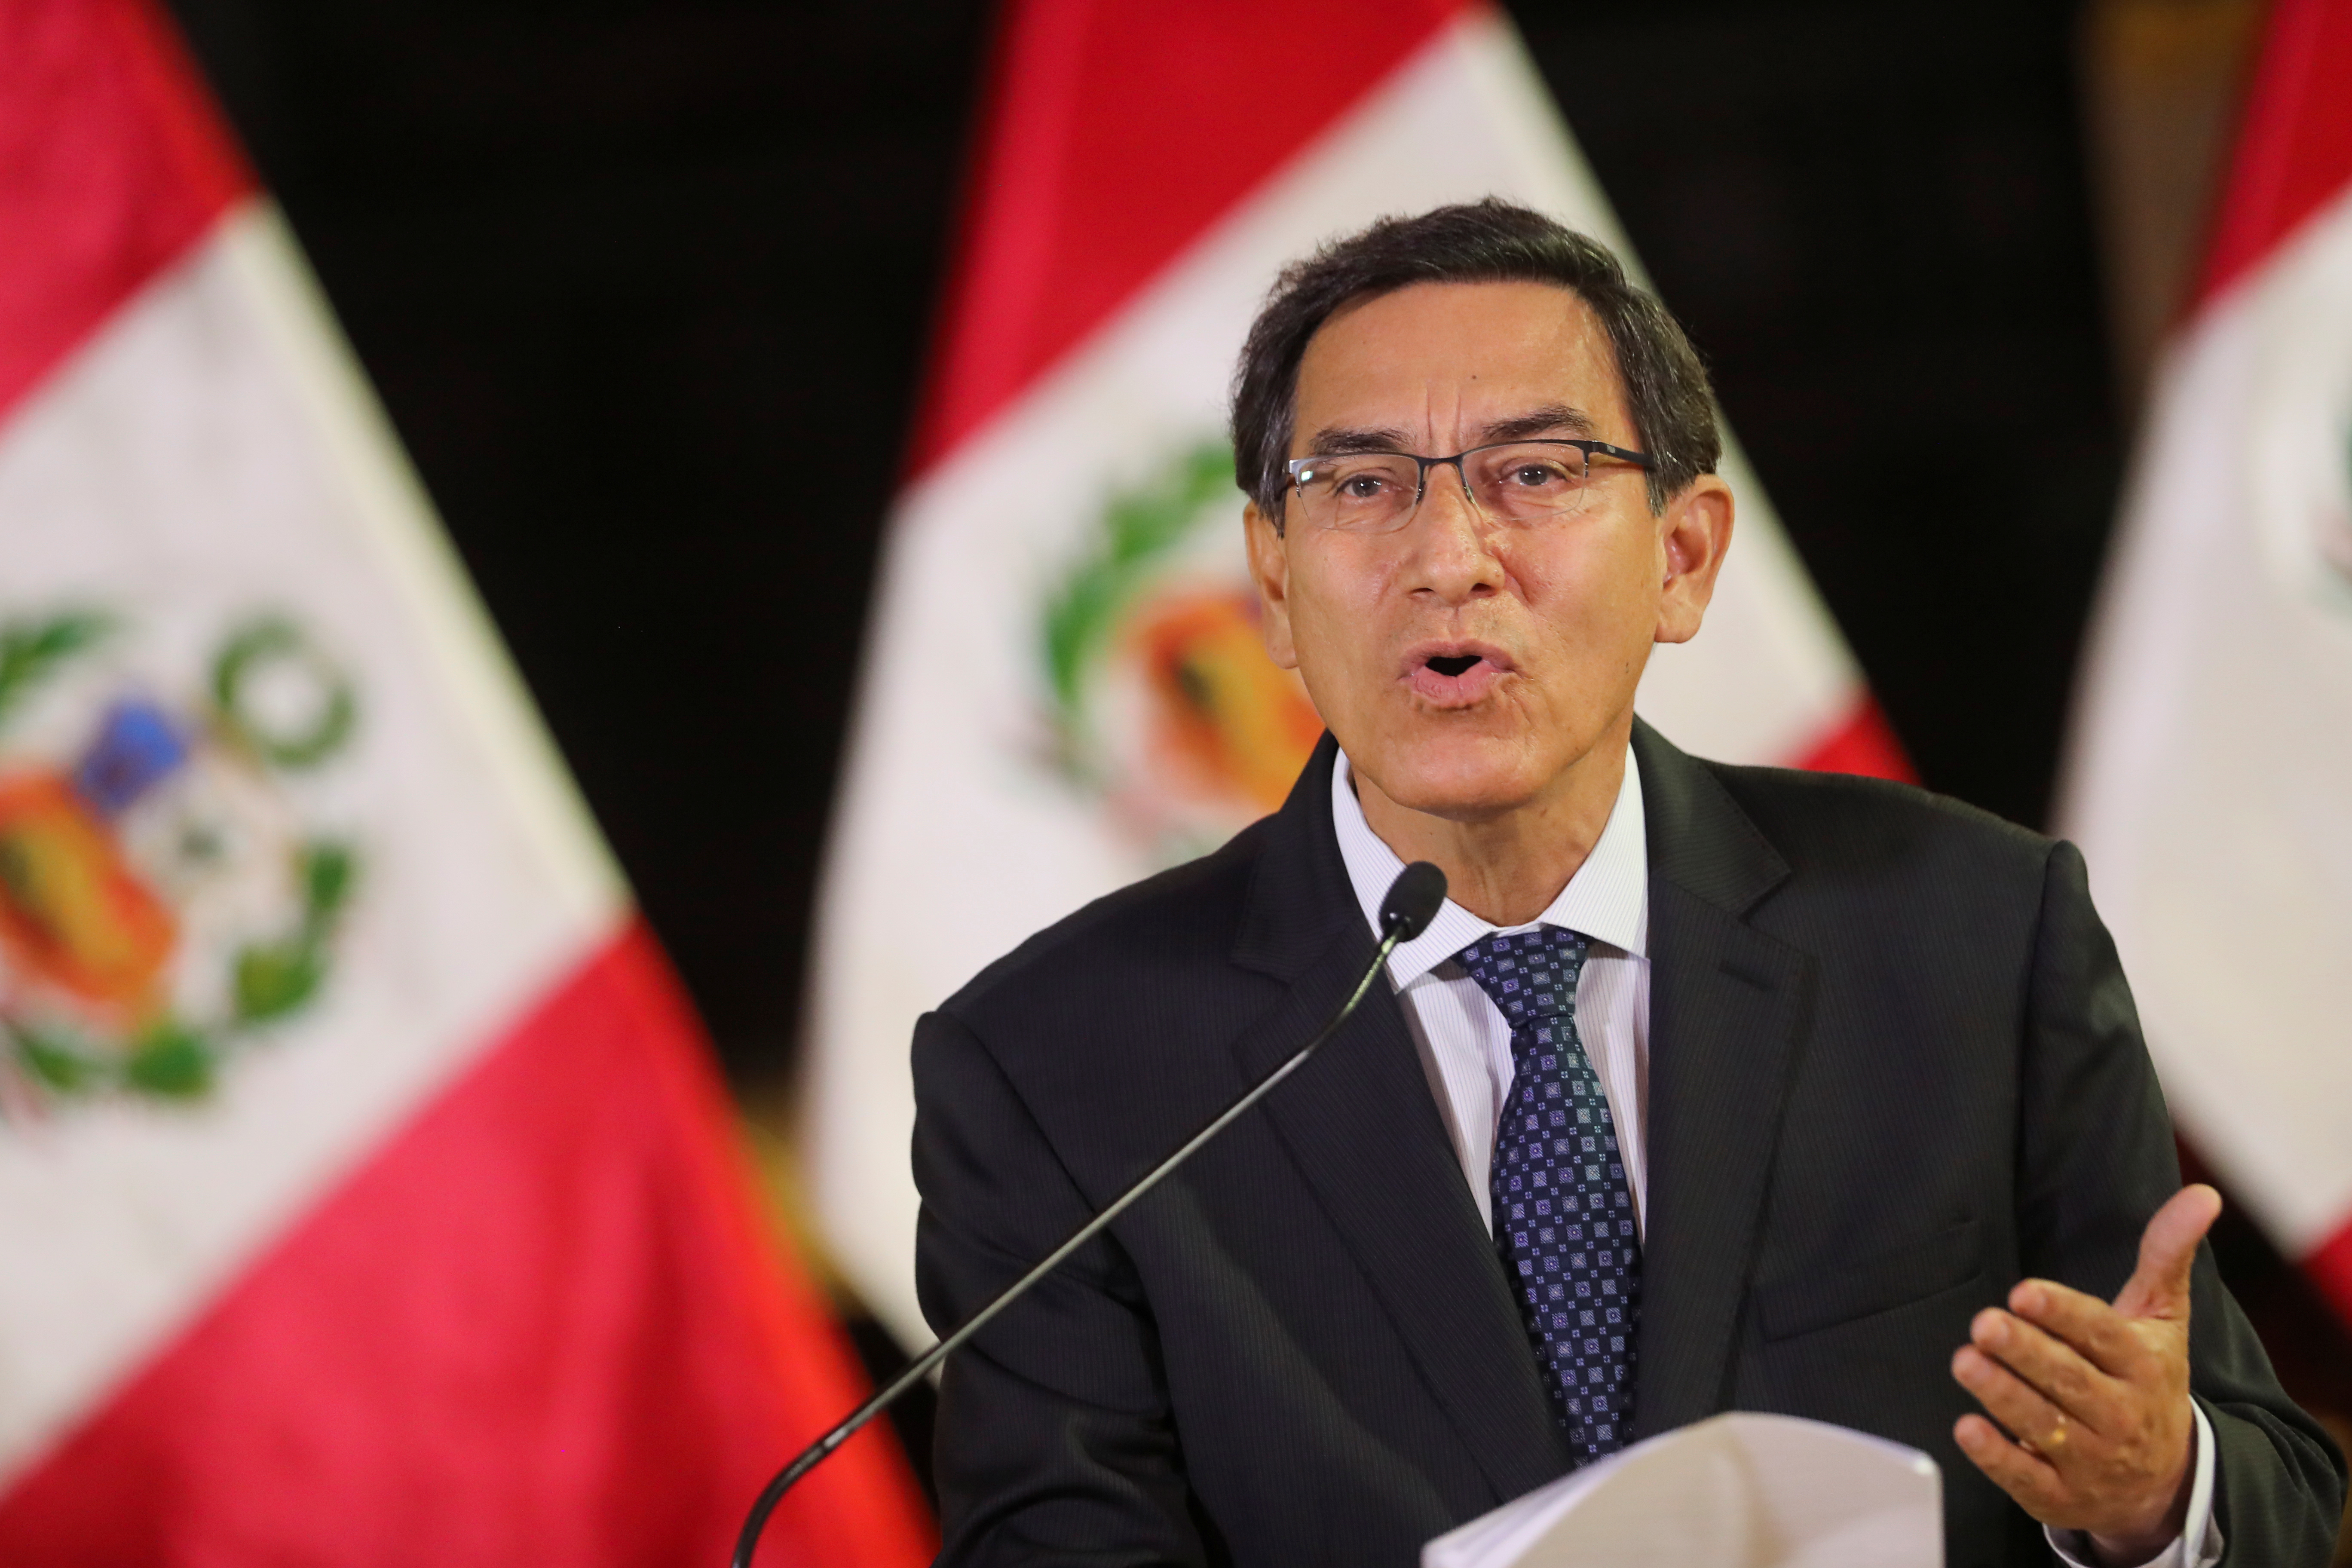 Controversia por video que muestra al presidente de Perú junto a terroristas